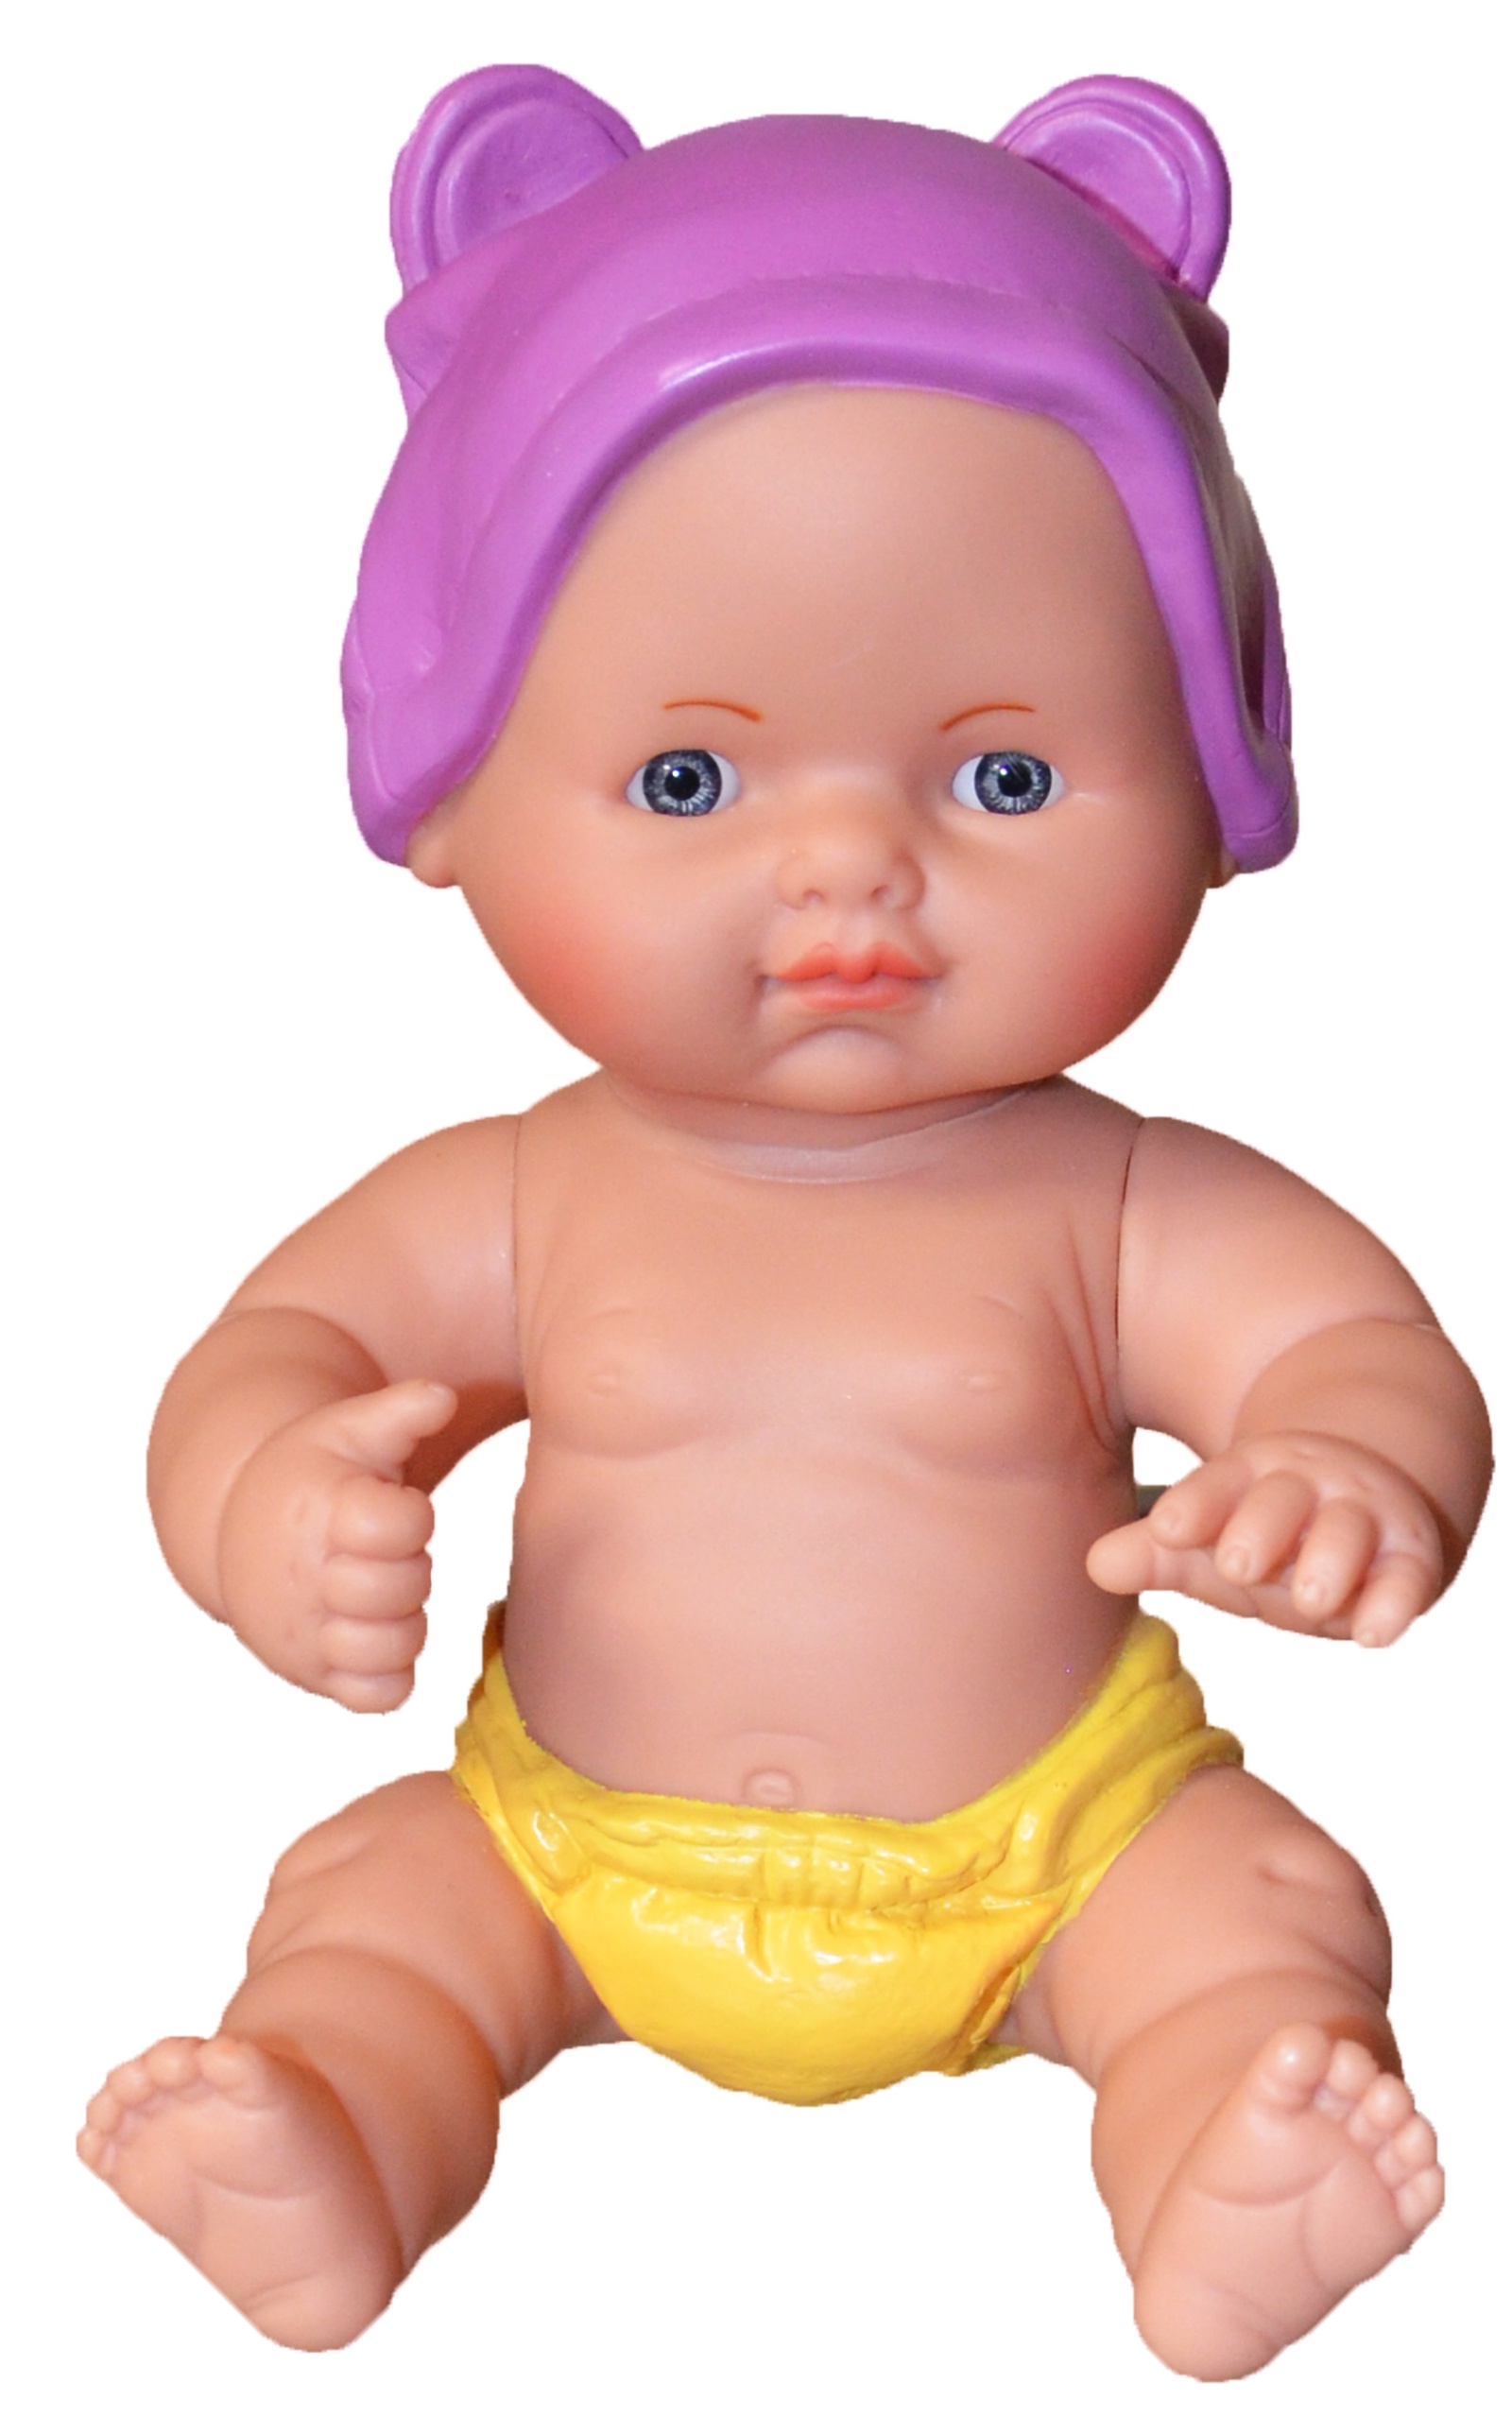 Ка пупси. Пупс Manolo Dolls. Маноло - Manolo пупс в фиолетовой шапочке, виниловый (18 см). Пупс Munecas Manolo Dolls Diana-boy, 50 см, 7115. Lamagik mon bebe Reborn, 45 см, 51503.